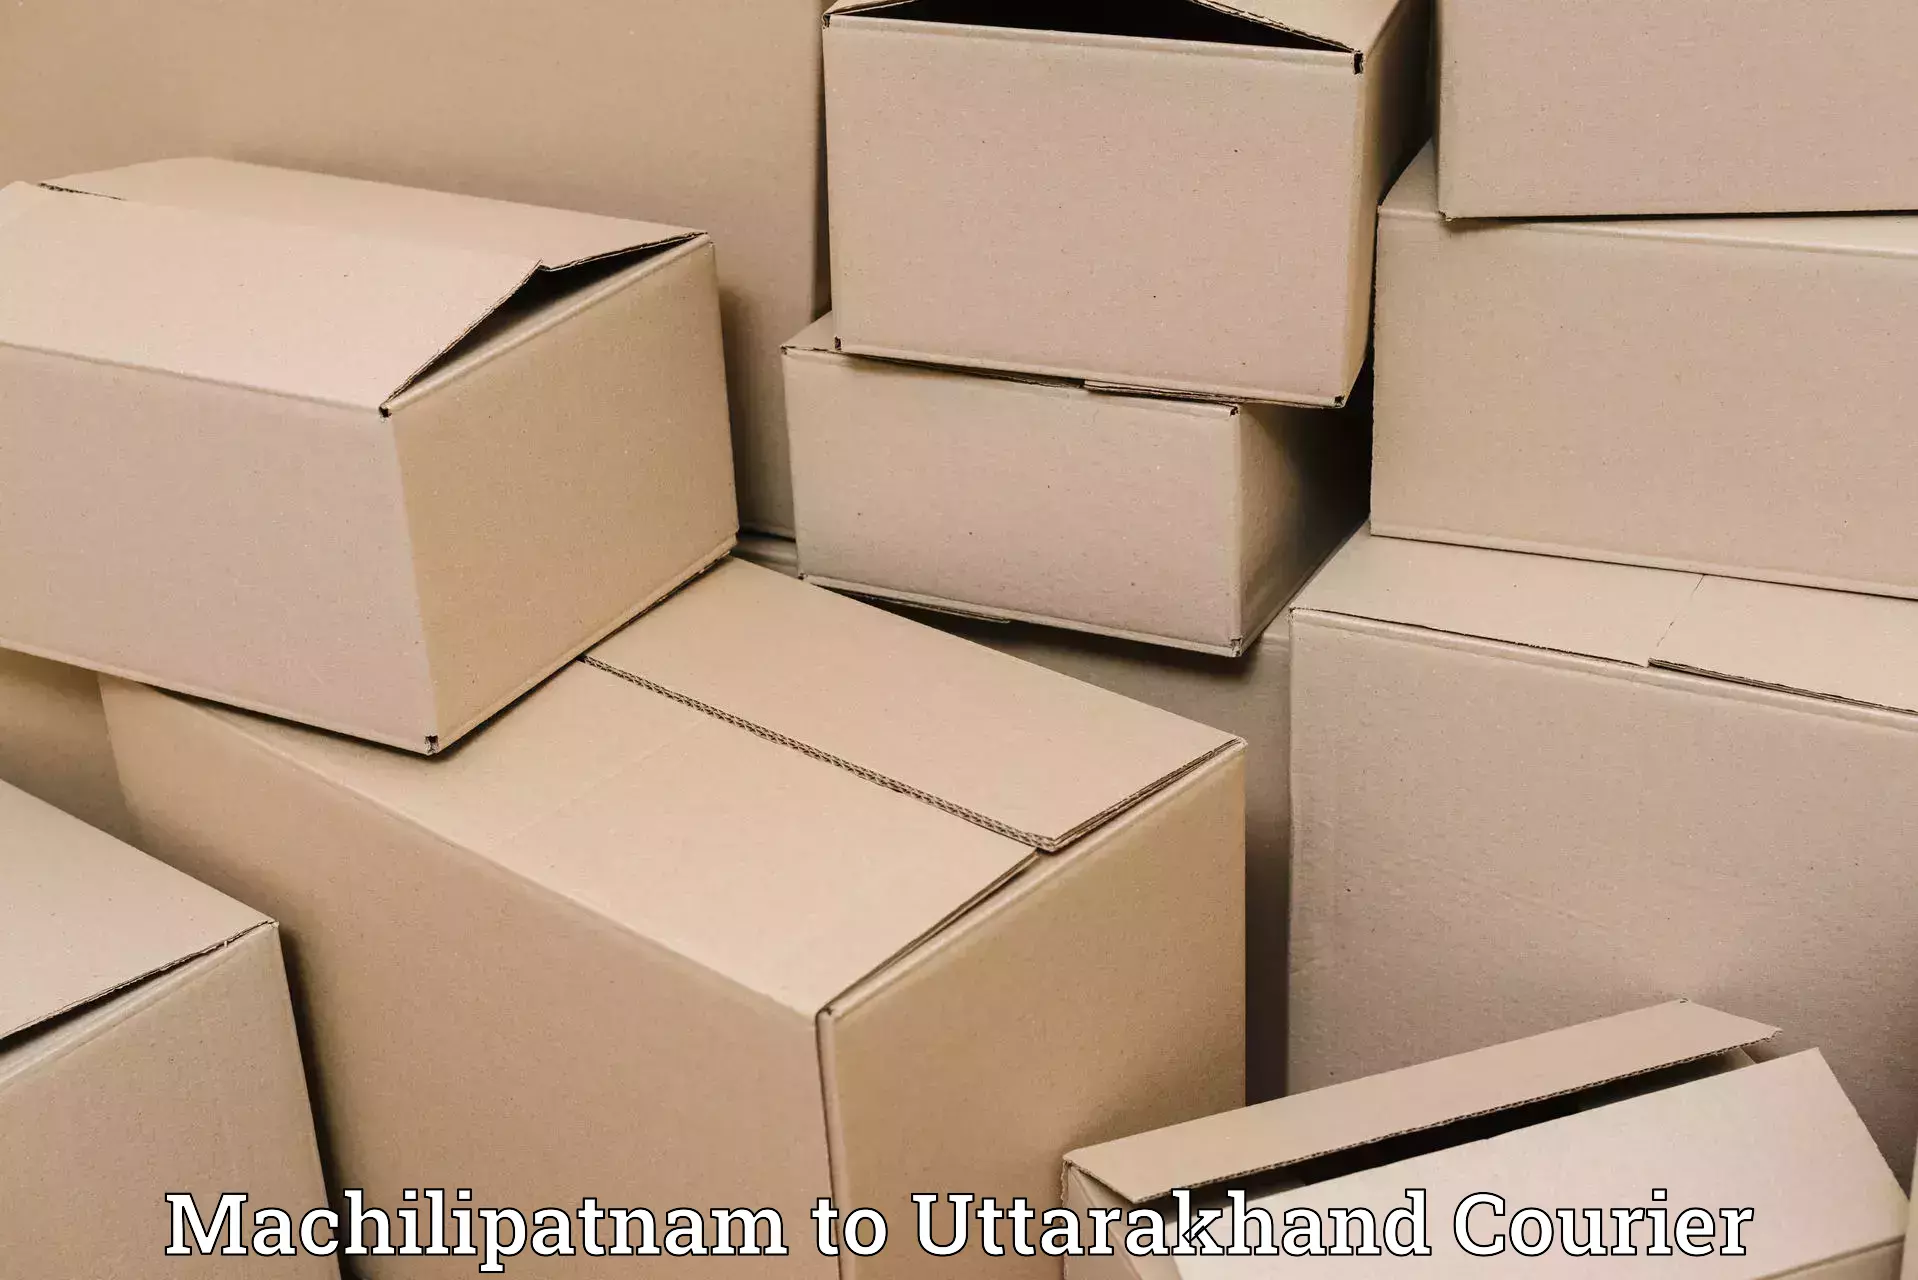 Ocean freight courier Machilipatnam to Rishikesh